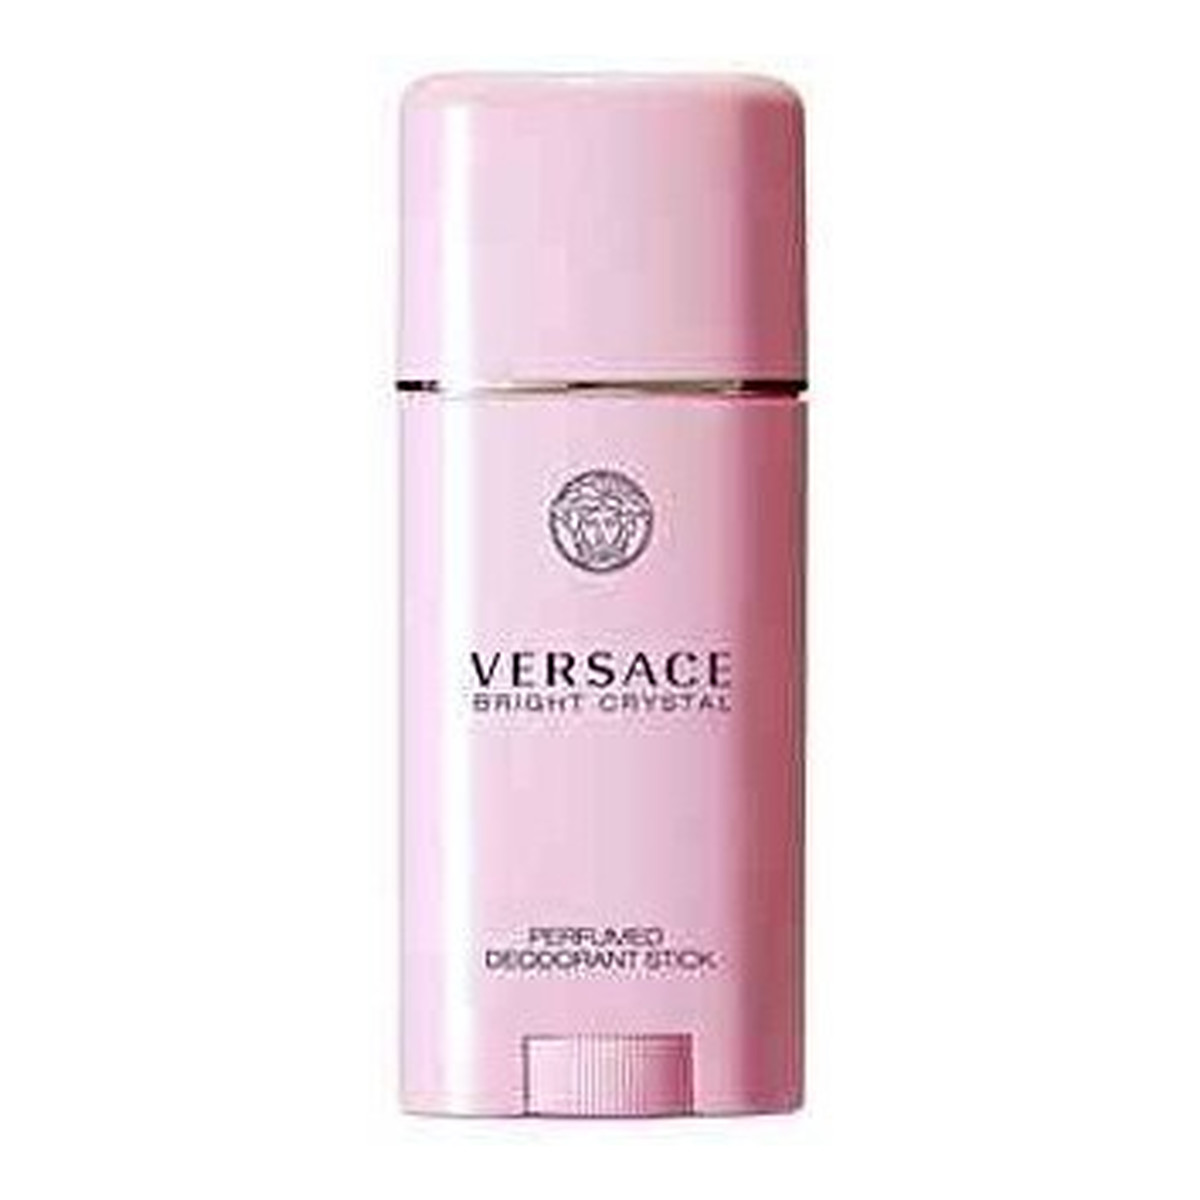 Versace Bright Crystal dezodorant z atomizerem dla kobiet 50ml